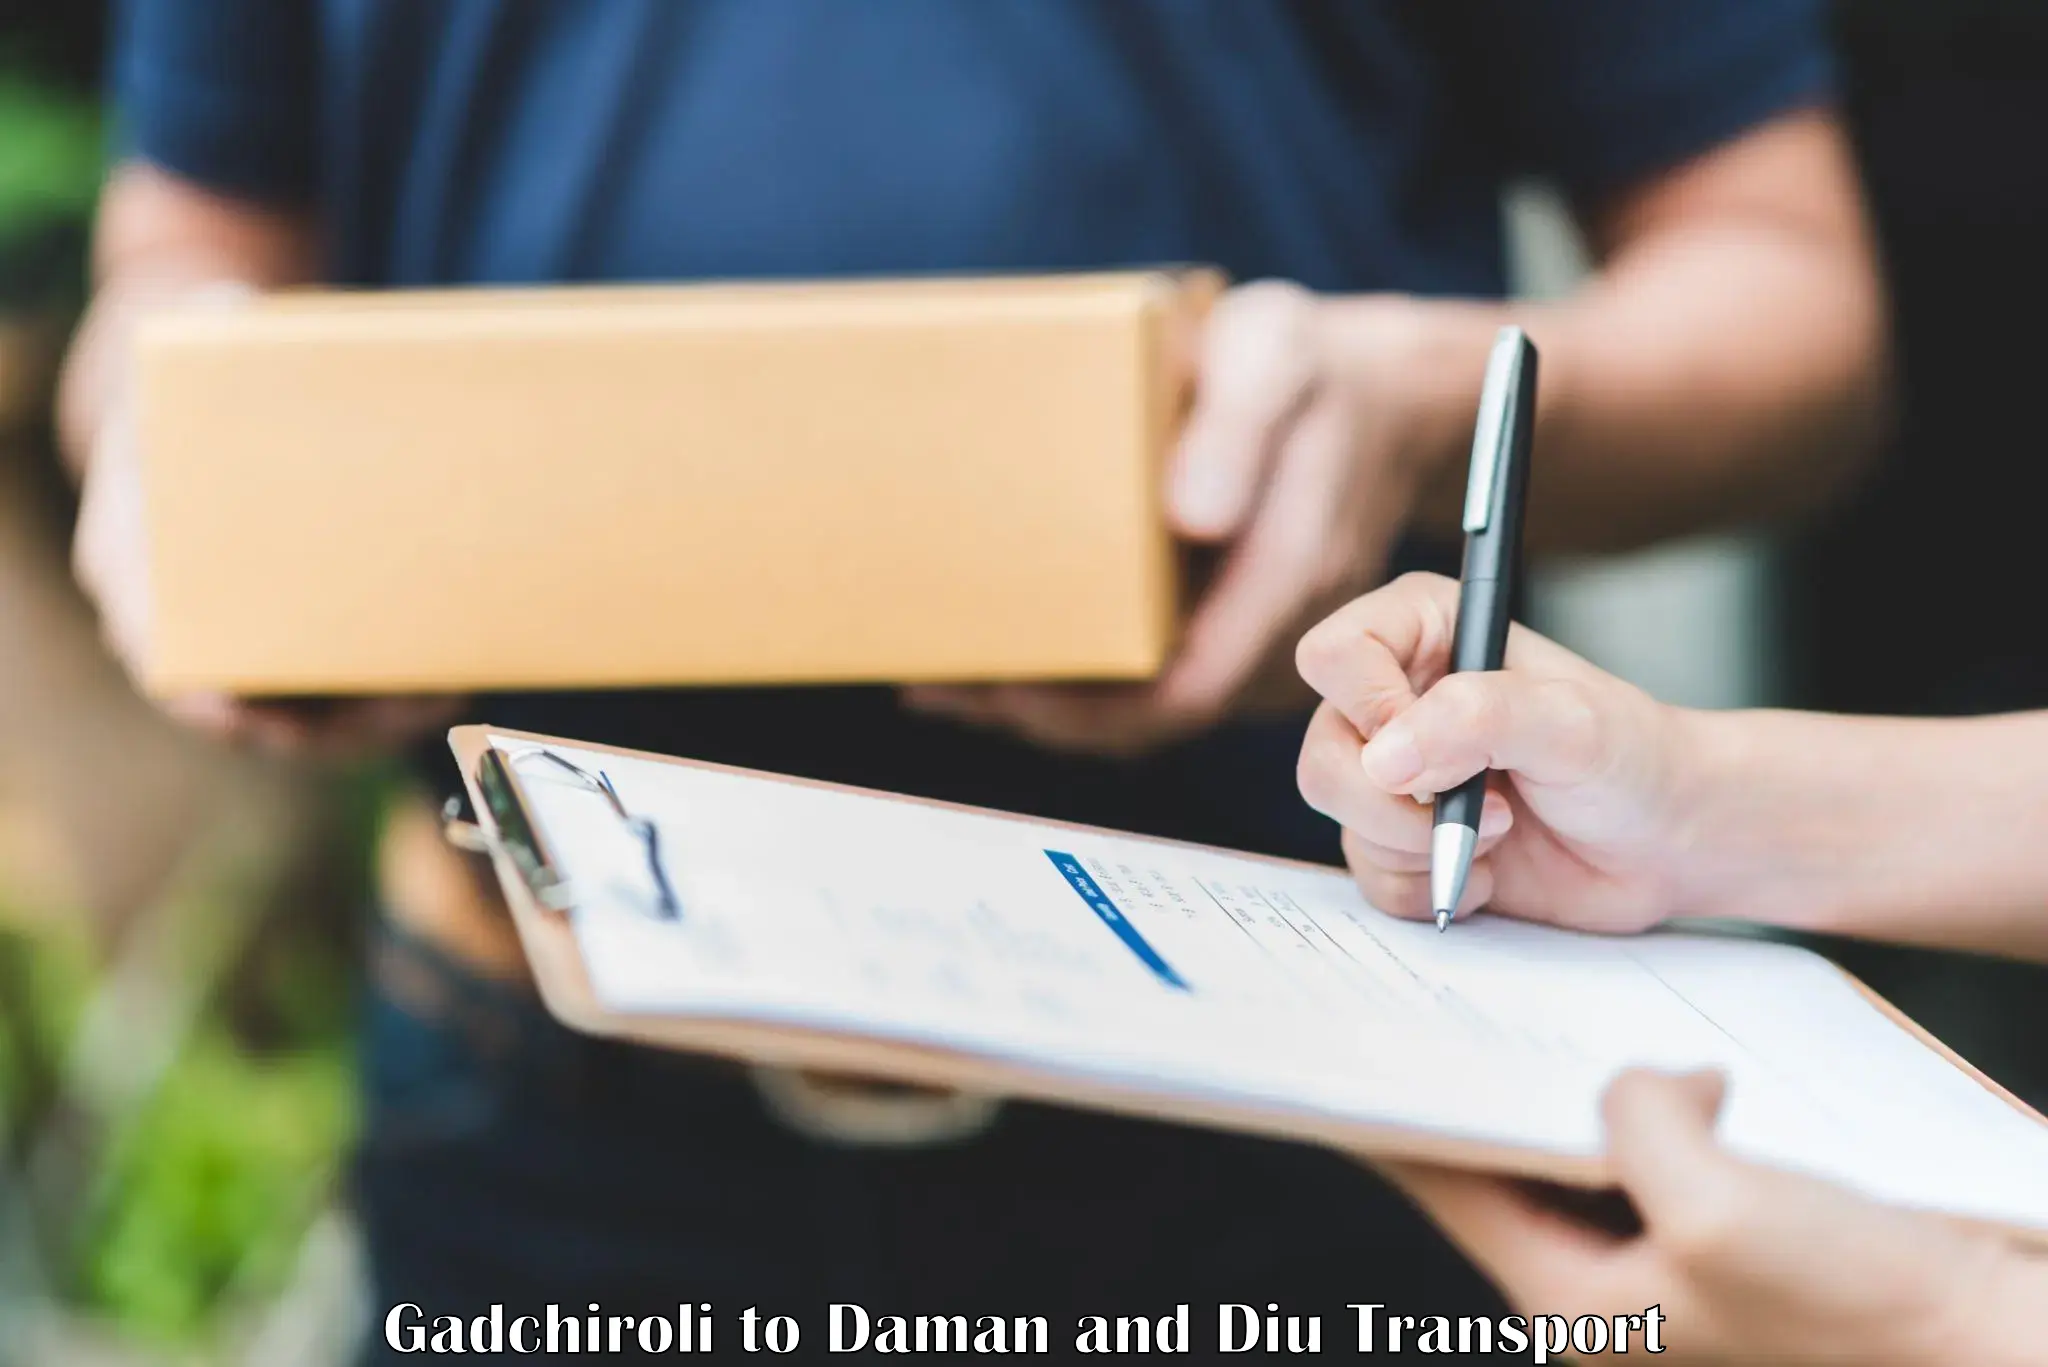 Express transport services Gadchiroli to Daman and Diu